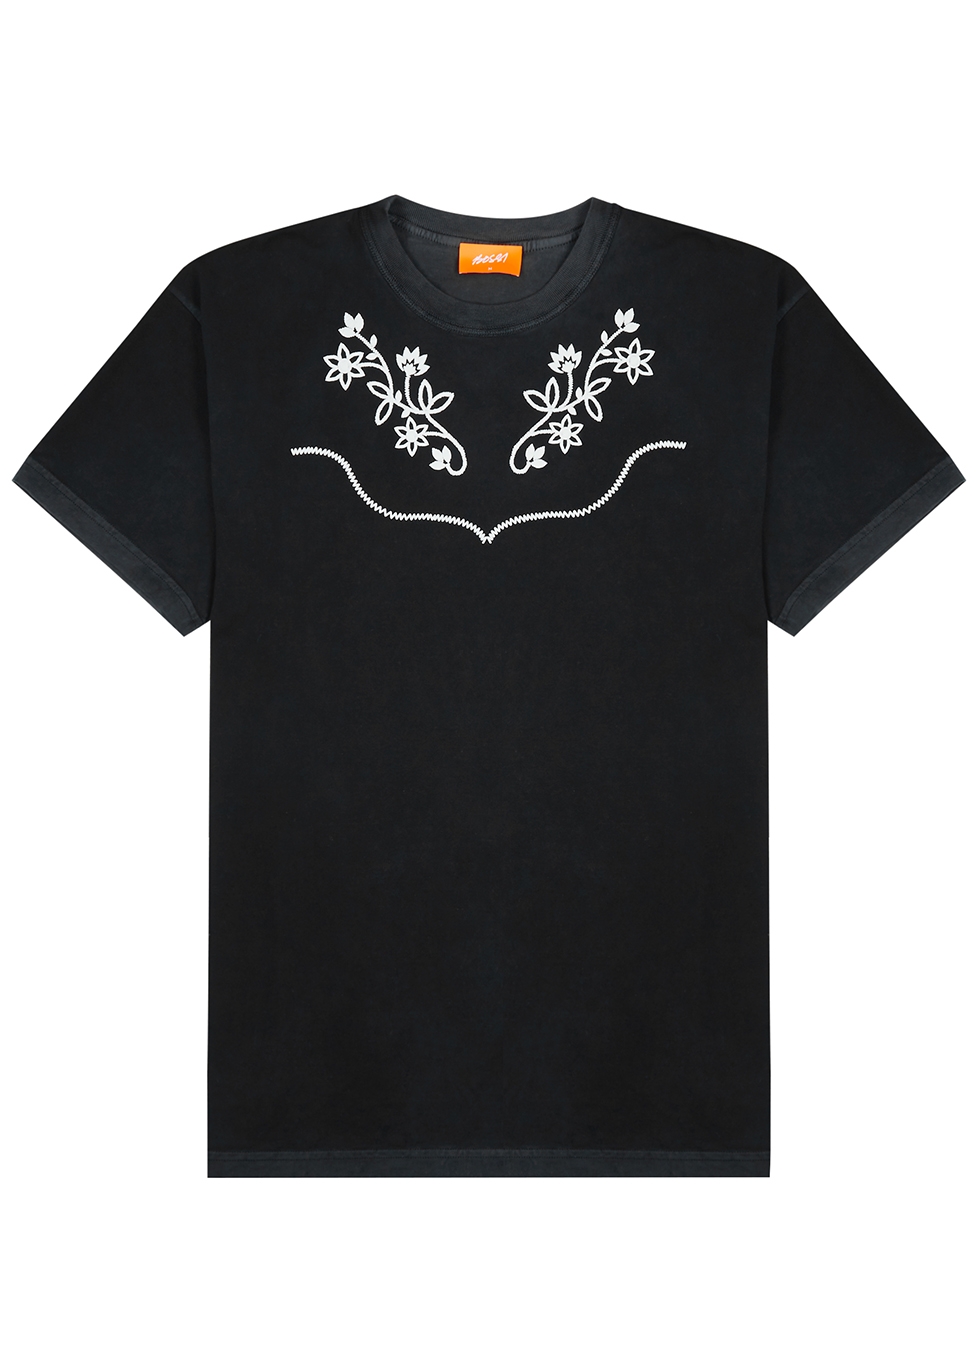 BOSSI Sportswear Western black cotton T-shirt